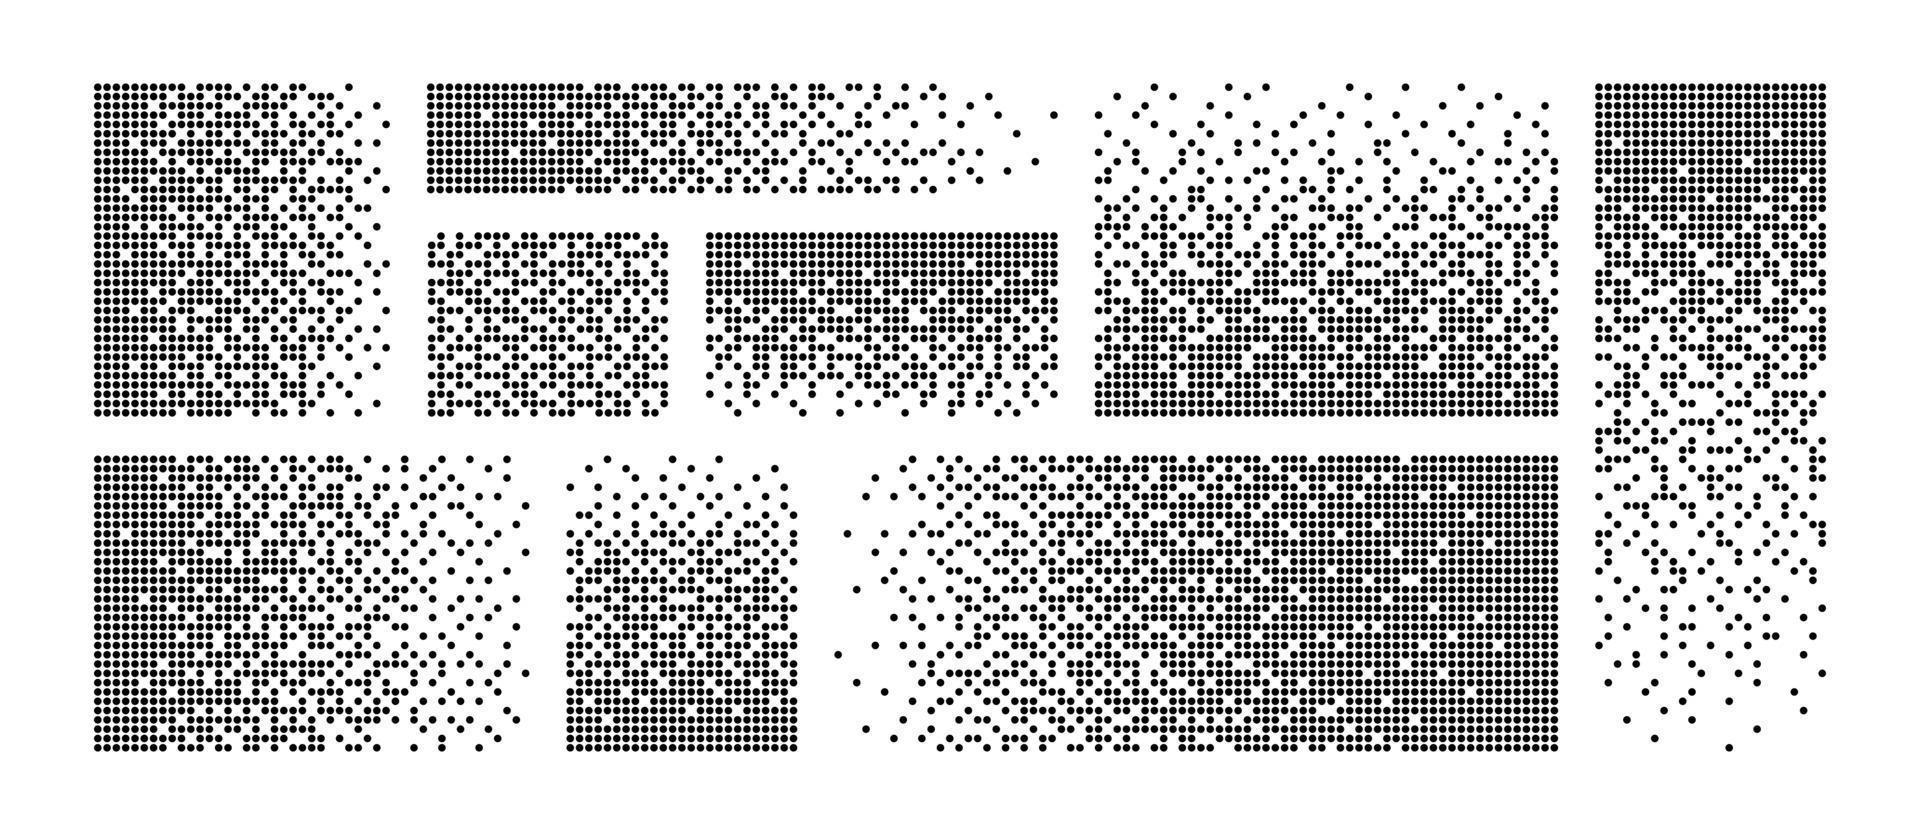 Hintergrund der Pixelauflösung. Zerfallseffekt. verteiltes gepunktetes Muster. Konzept der Auflösung. Setzen Sie Pixelmosaiktexturen mit einfachen quadratischen Partikeln. Vektorillustration auf weißem Hintergrund vektor